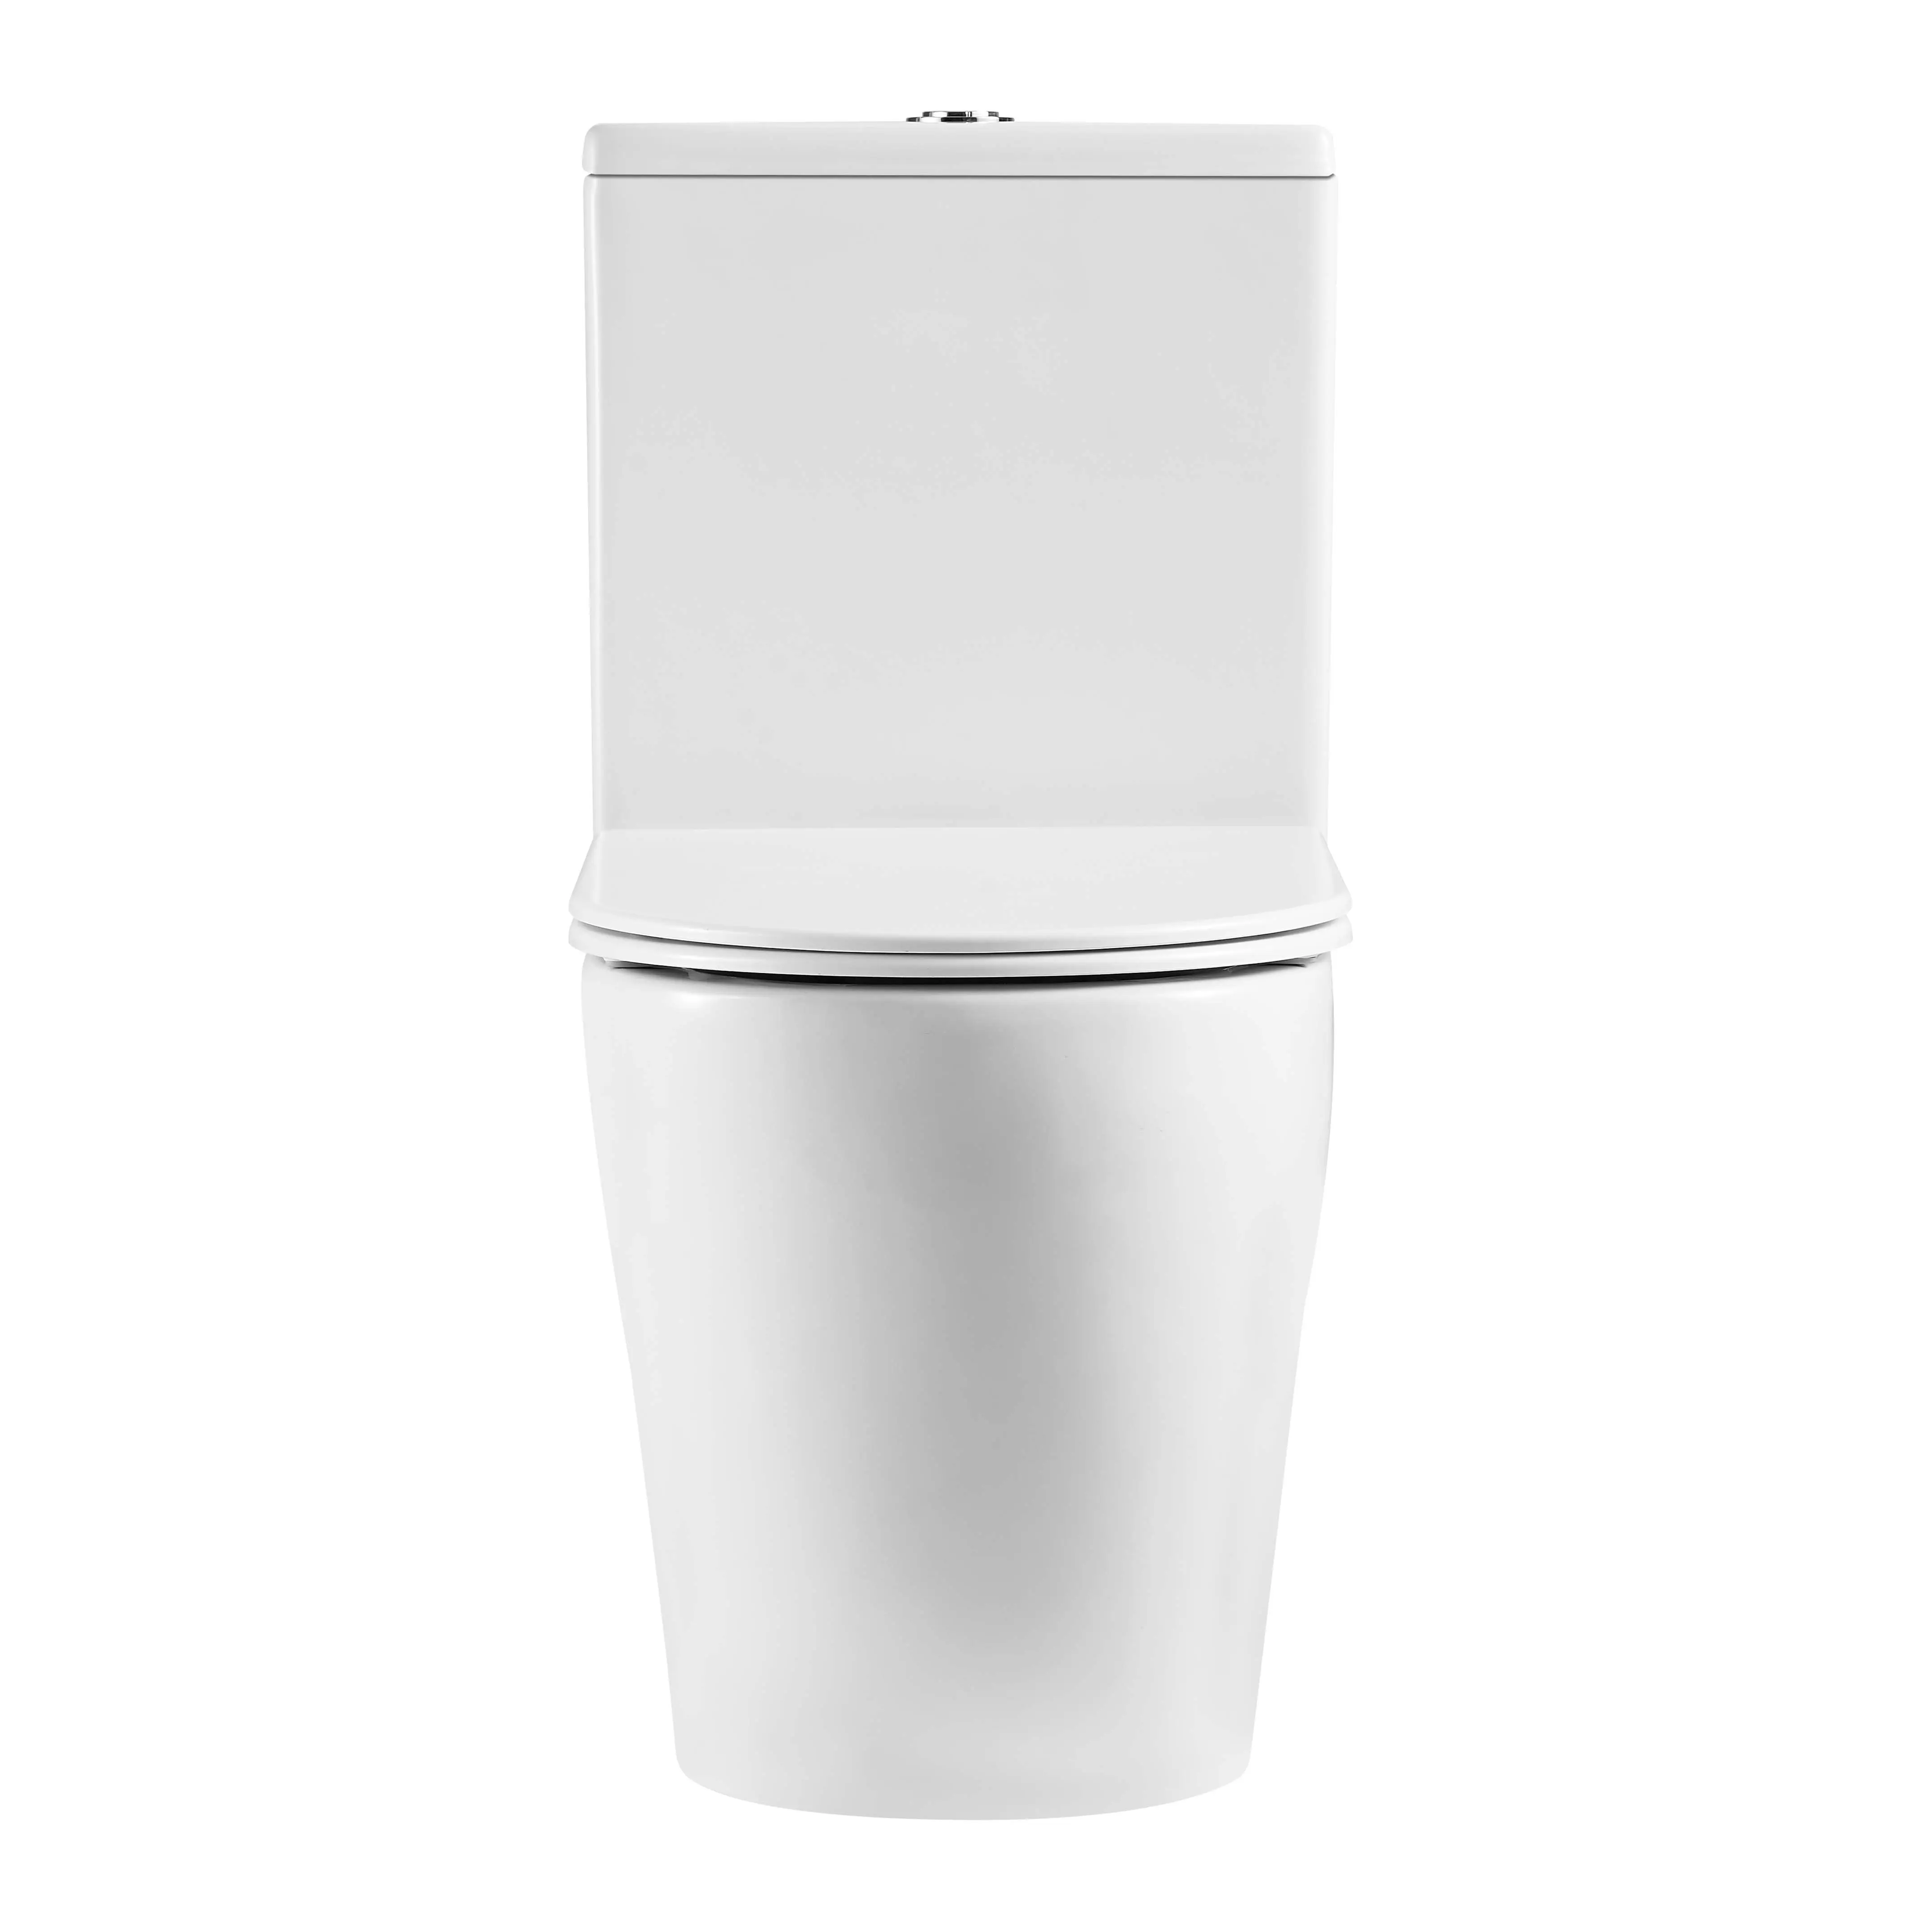 Banheiro sanitário, duas peças, vaso sanitário macio, capa de montagem famosa, branco e preto